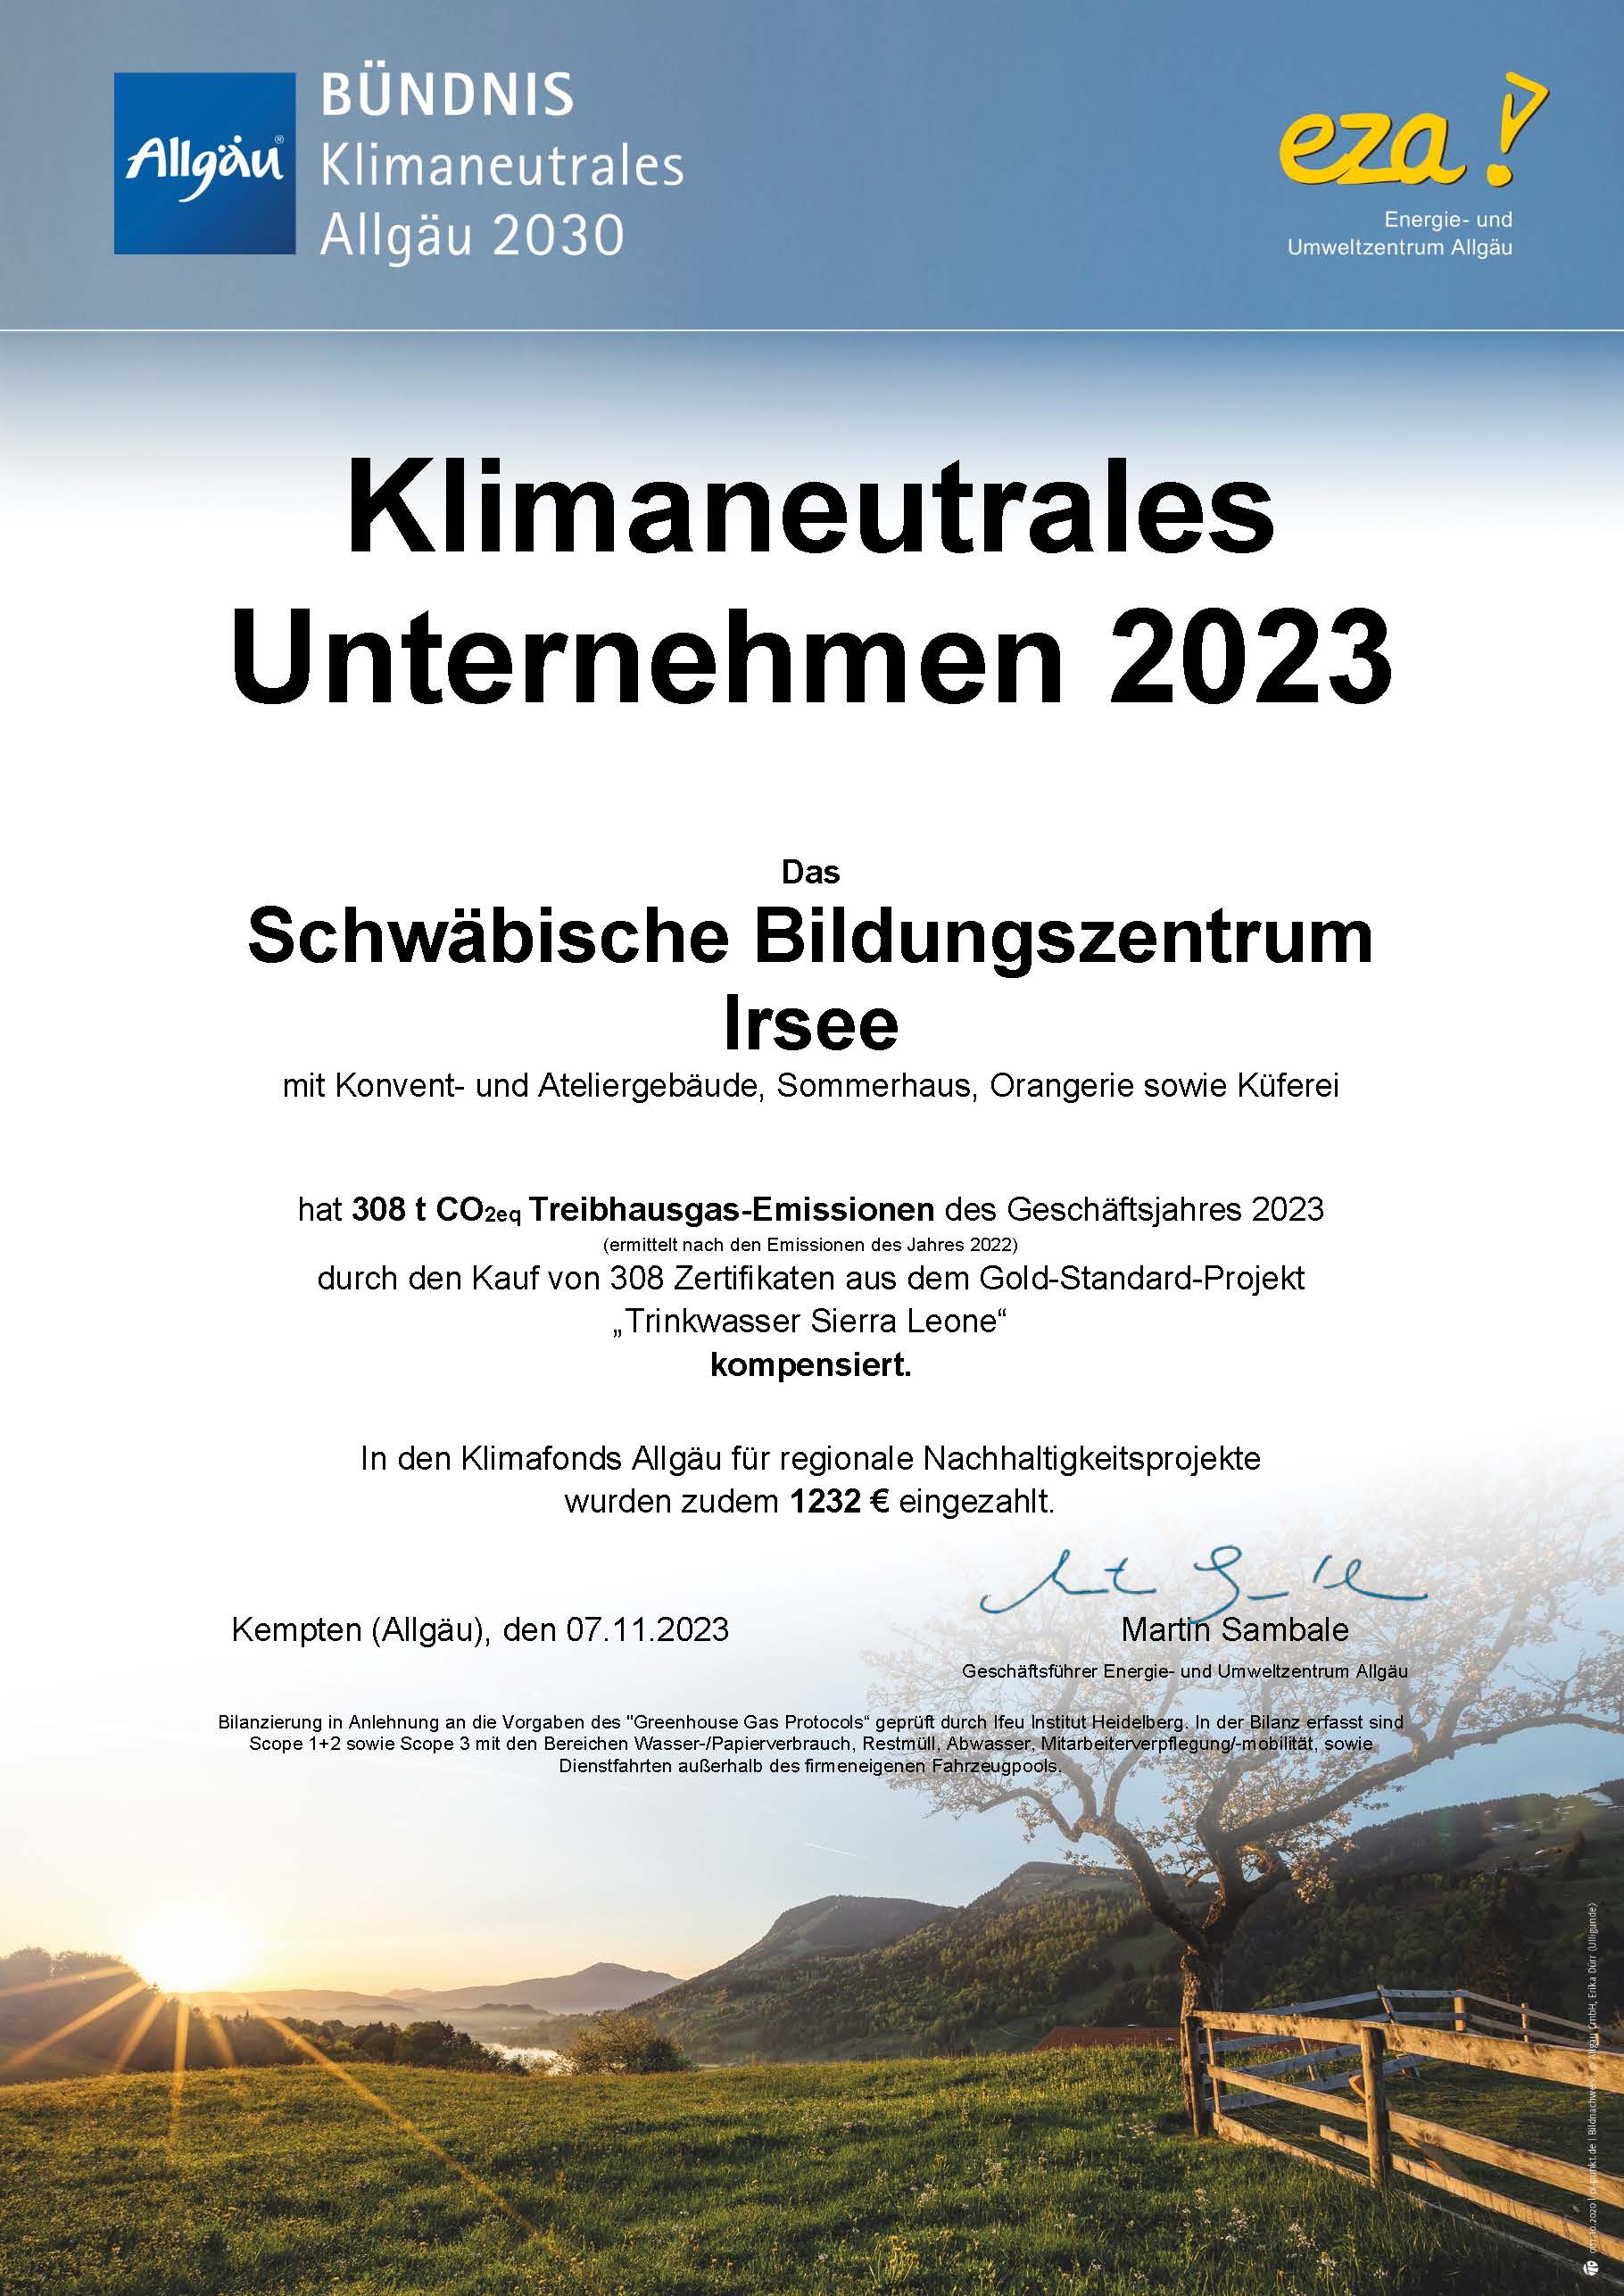 Kloster Irsee ist „Klimaneutrales Unternehmen 2023“  